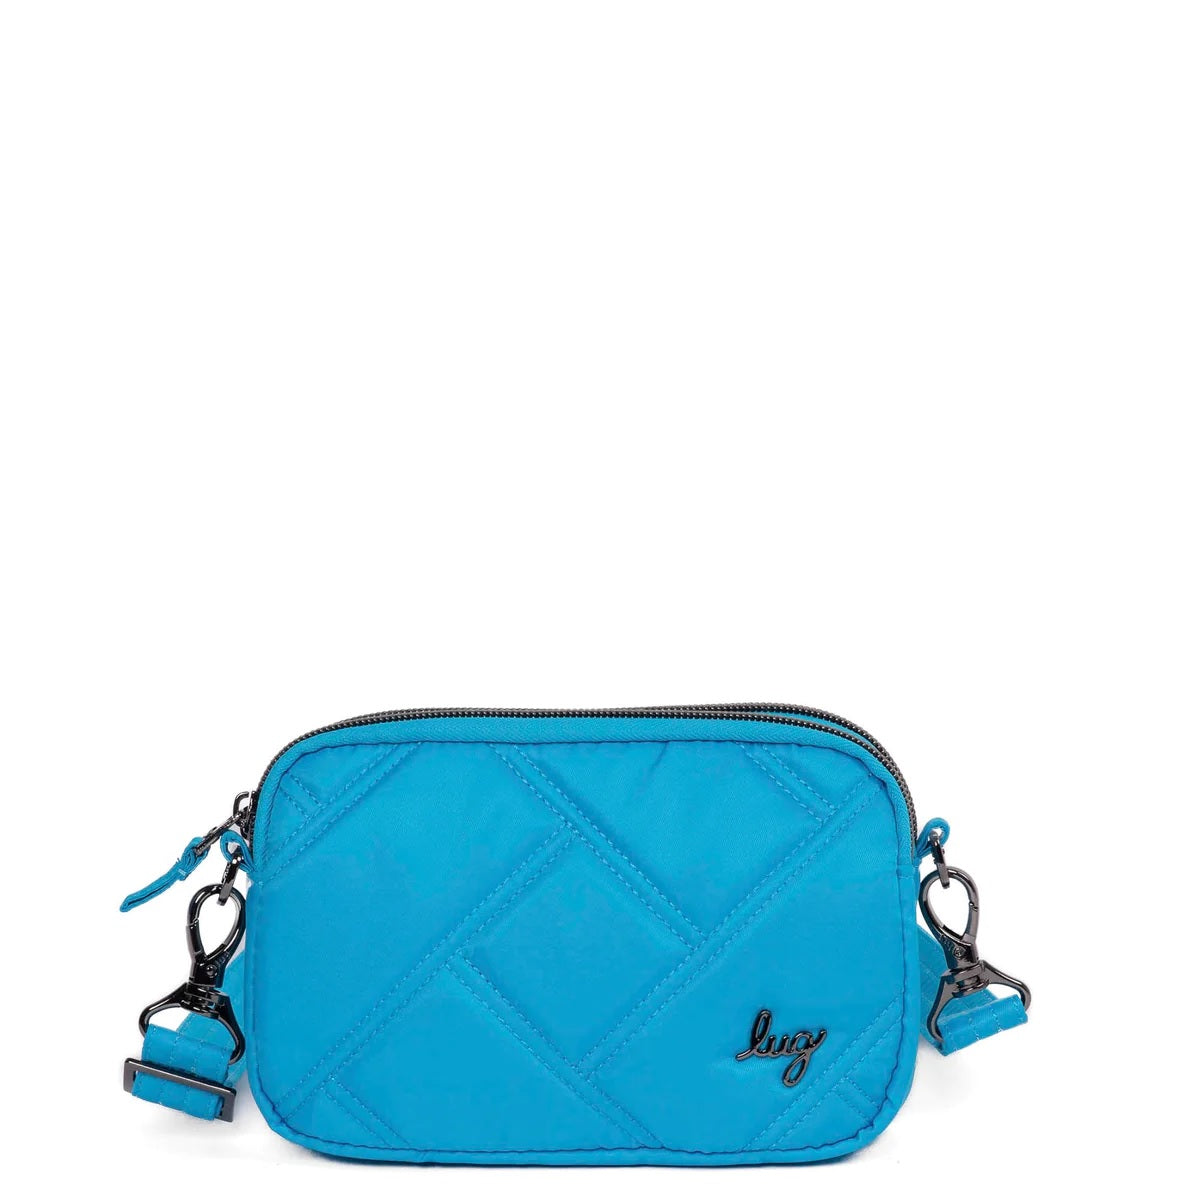 Coupe 2 Sky Blue Crossbody Bag